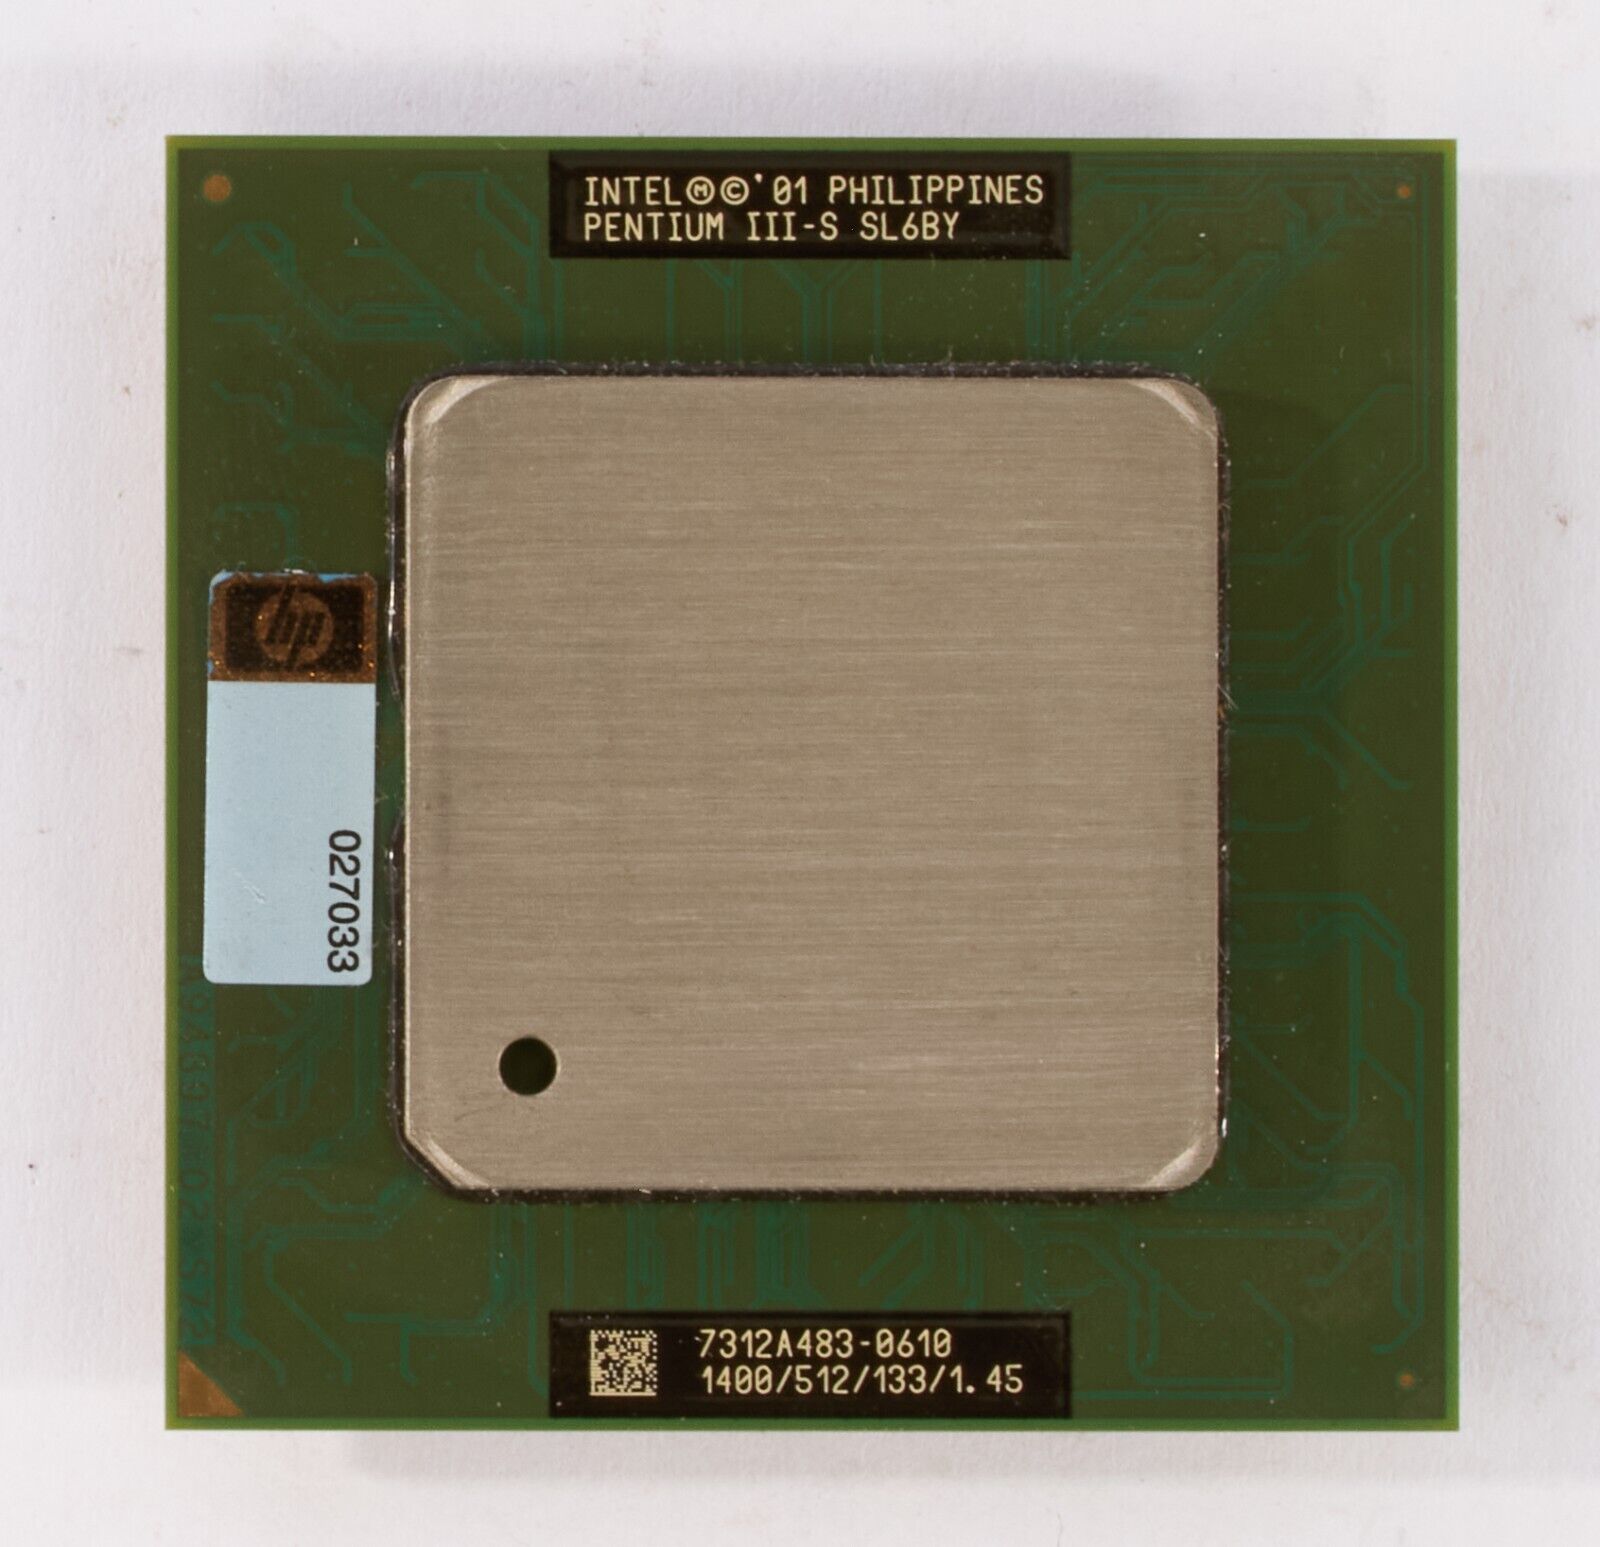 Intel Pentium III-S 1.4GHz SL6BY 1.4GHz 512KB 133 FSB Socket 370 CPU